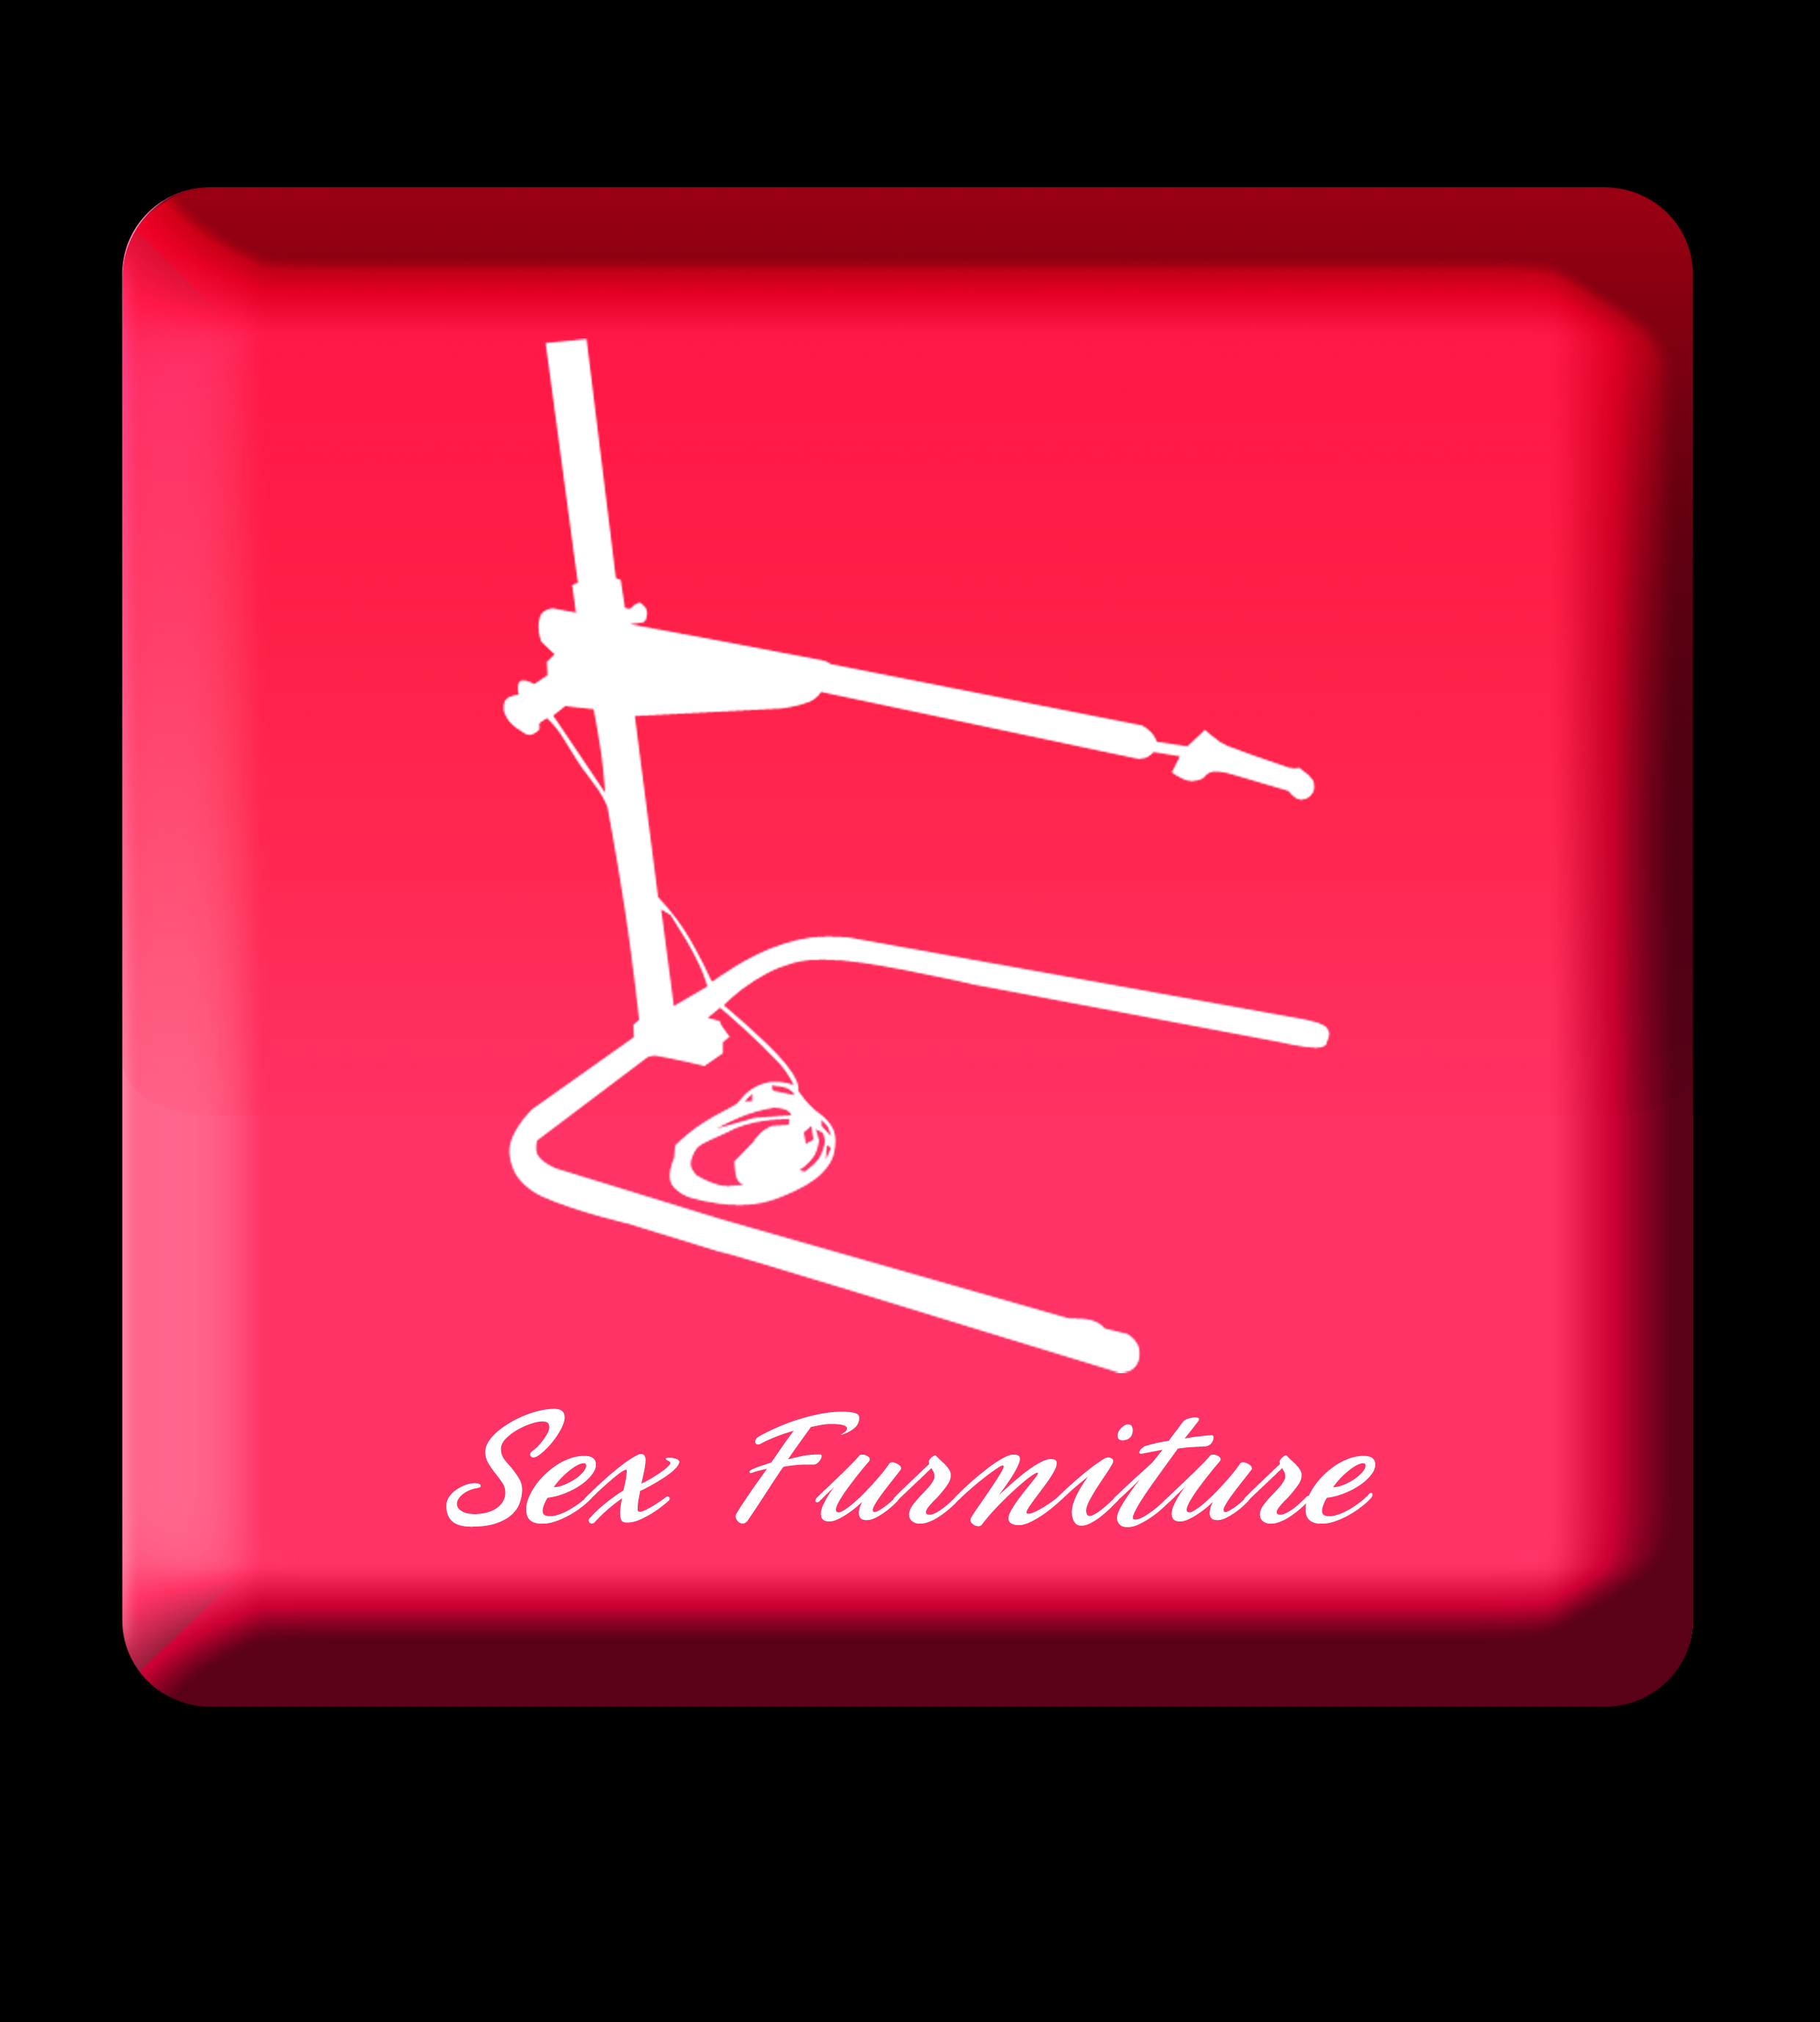 Sex Furniture